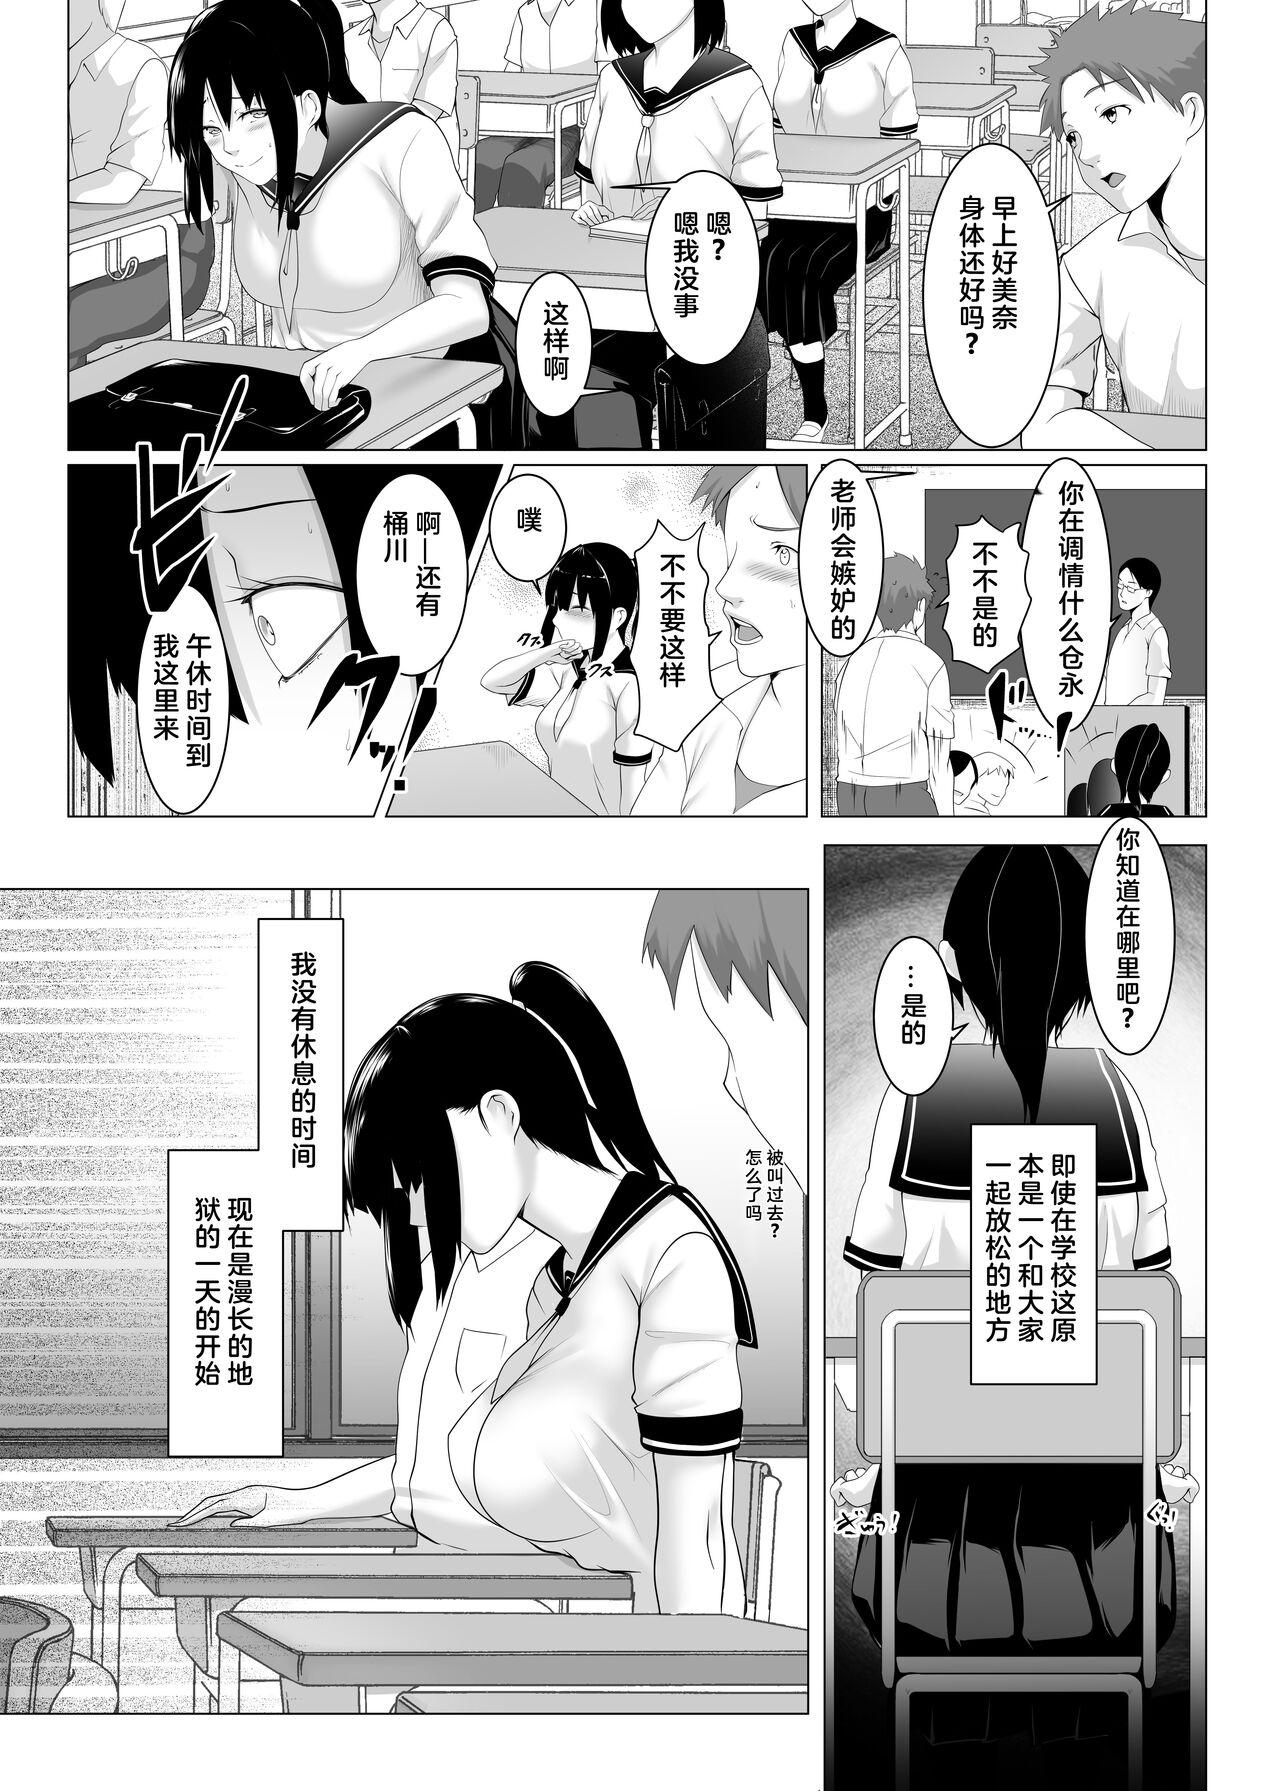 Oil Haramase no Shima 2 - Original Blackdick - Page 9